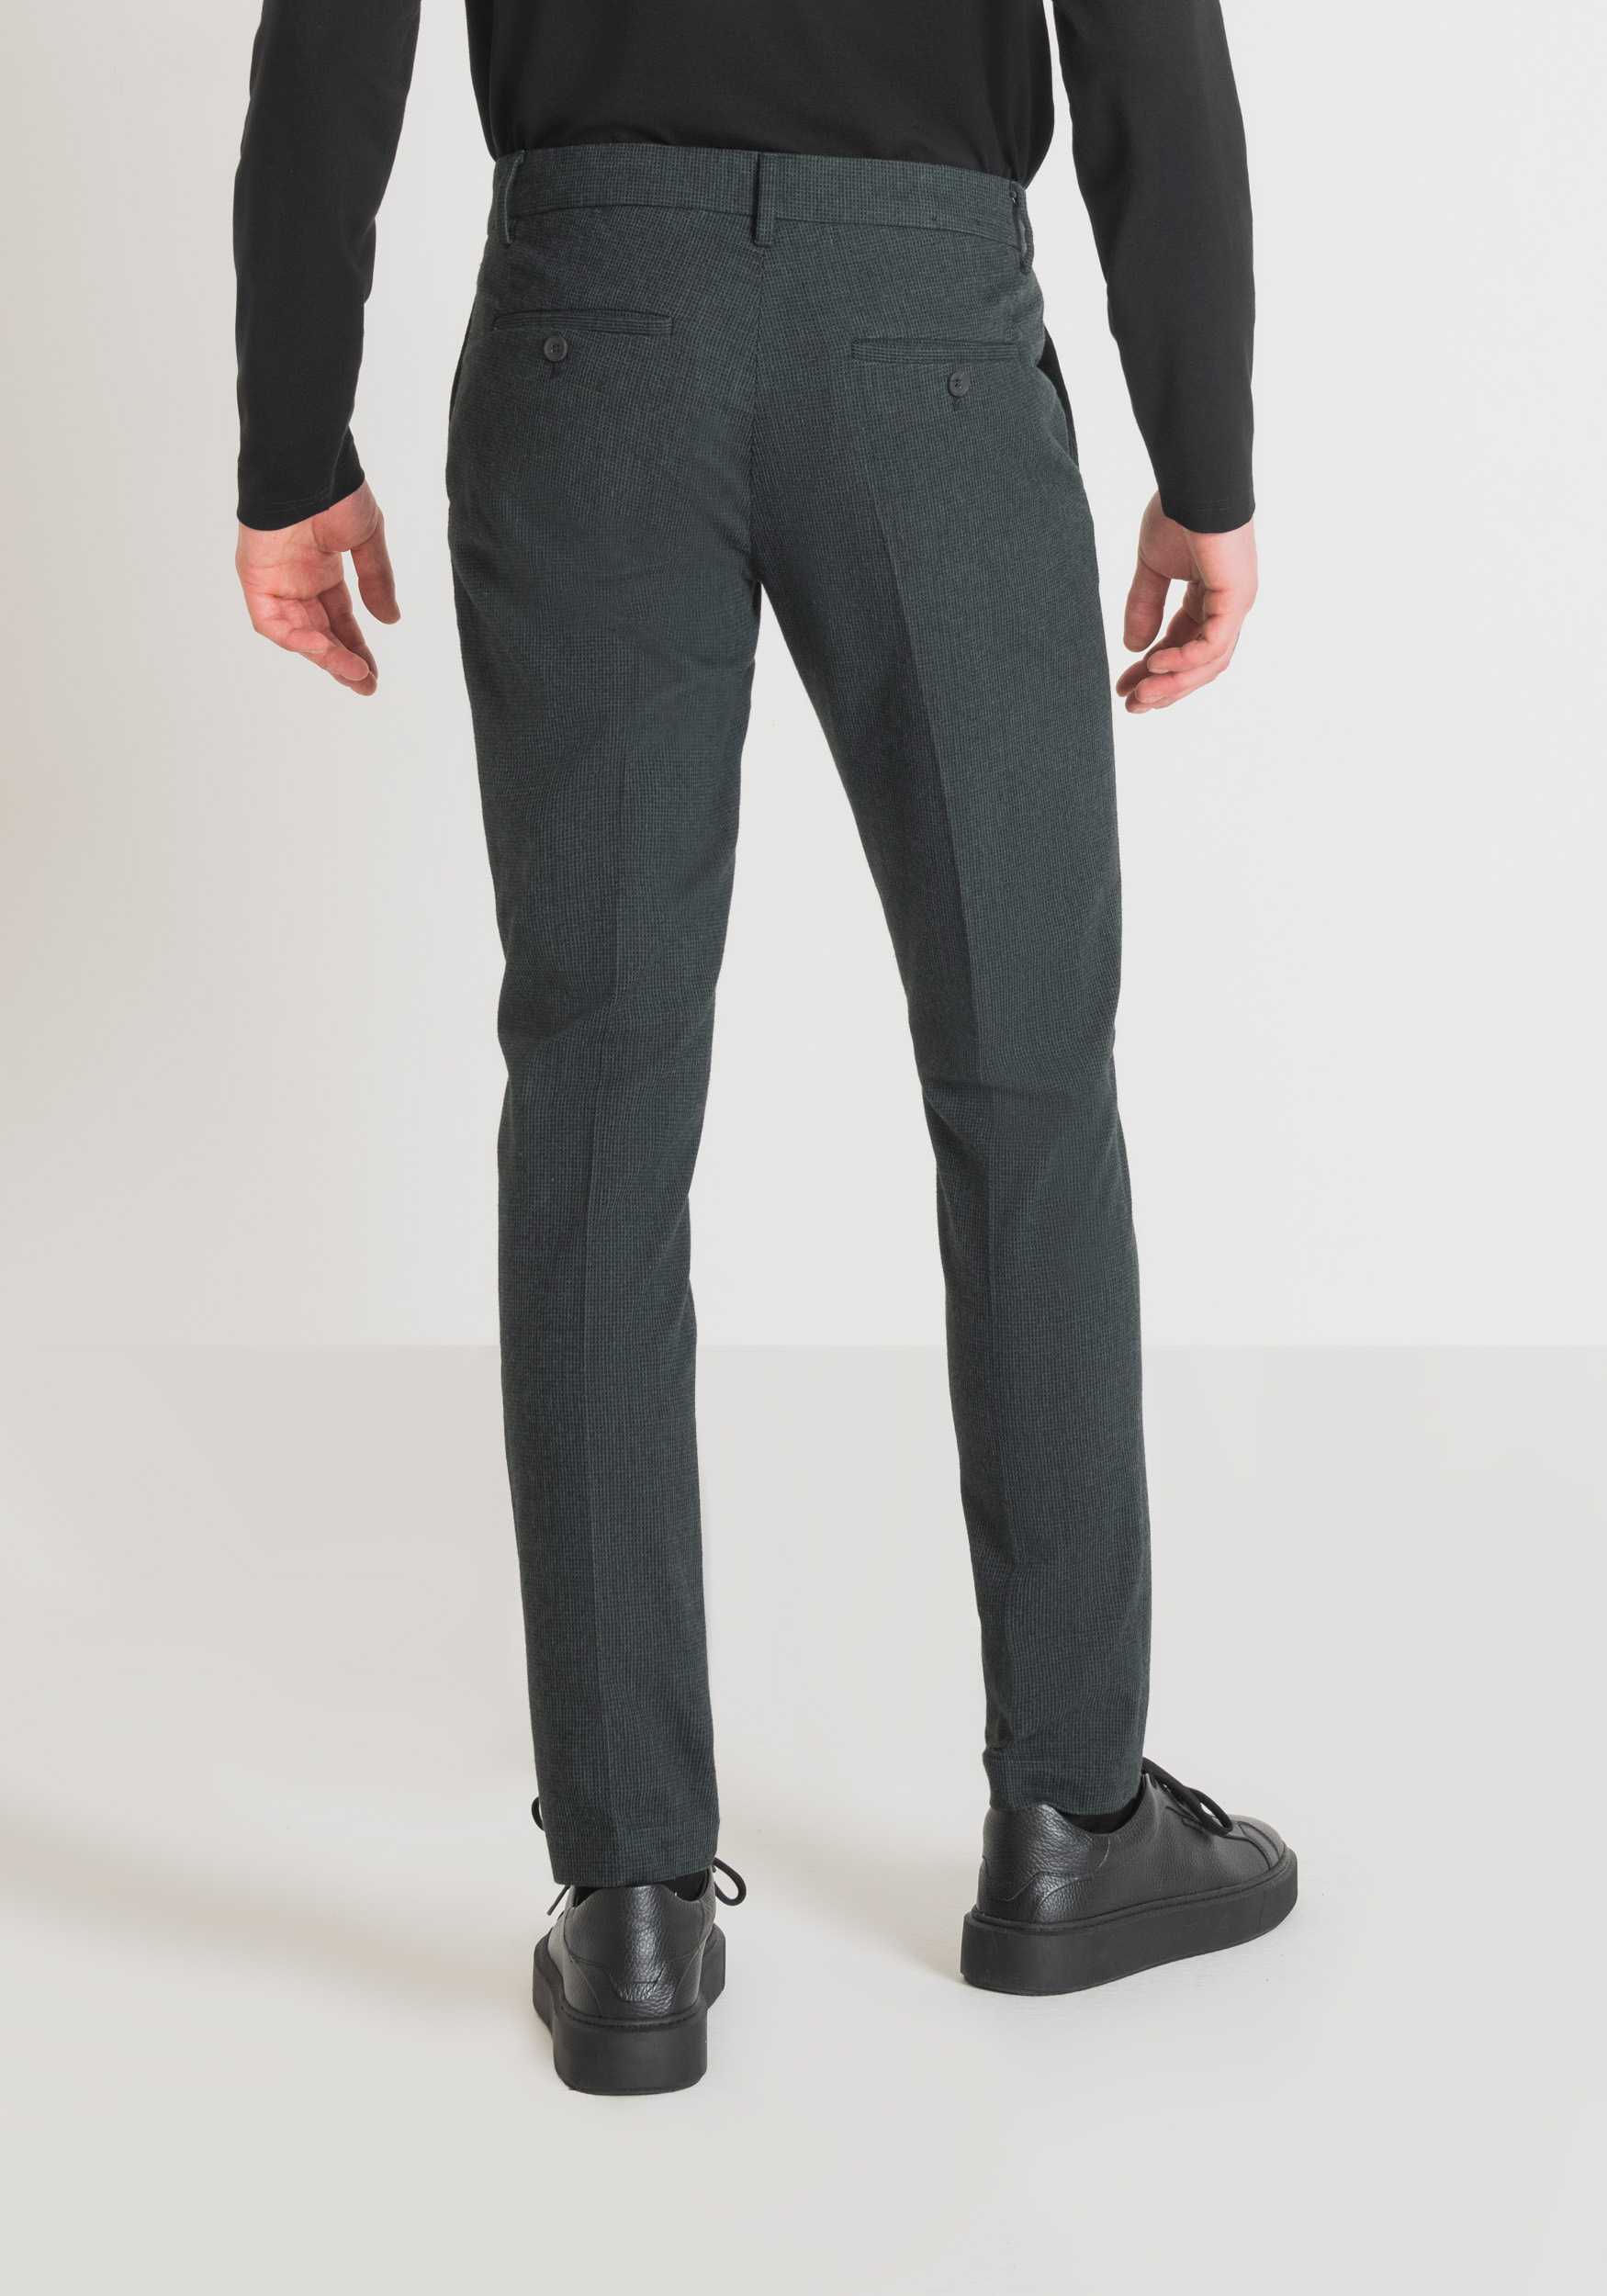 Antony Morato Pantalon Skinny Fit Bryan En Coton Melange Armure Elastique Bouteille Verte | Homme Pantalons